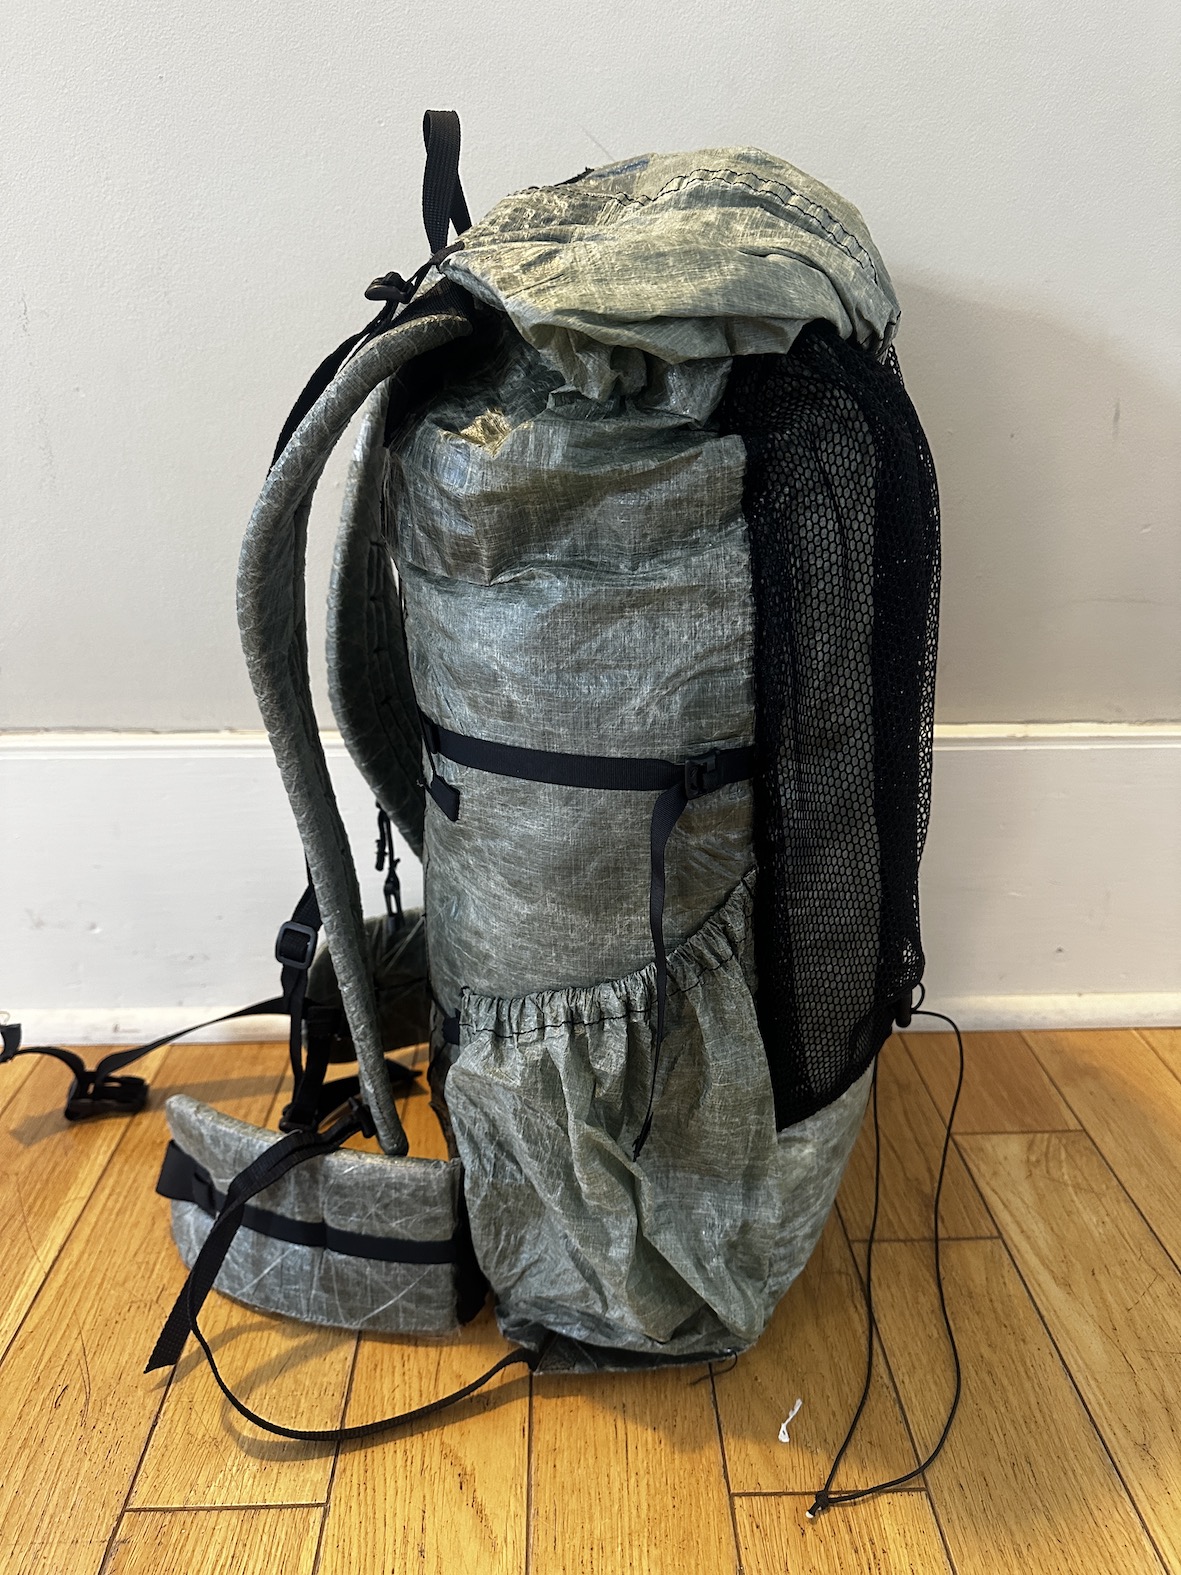 Zpacks Zero backpack, 10.25ozs - Backpacking Light